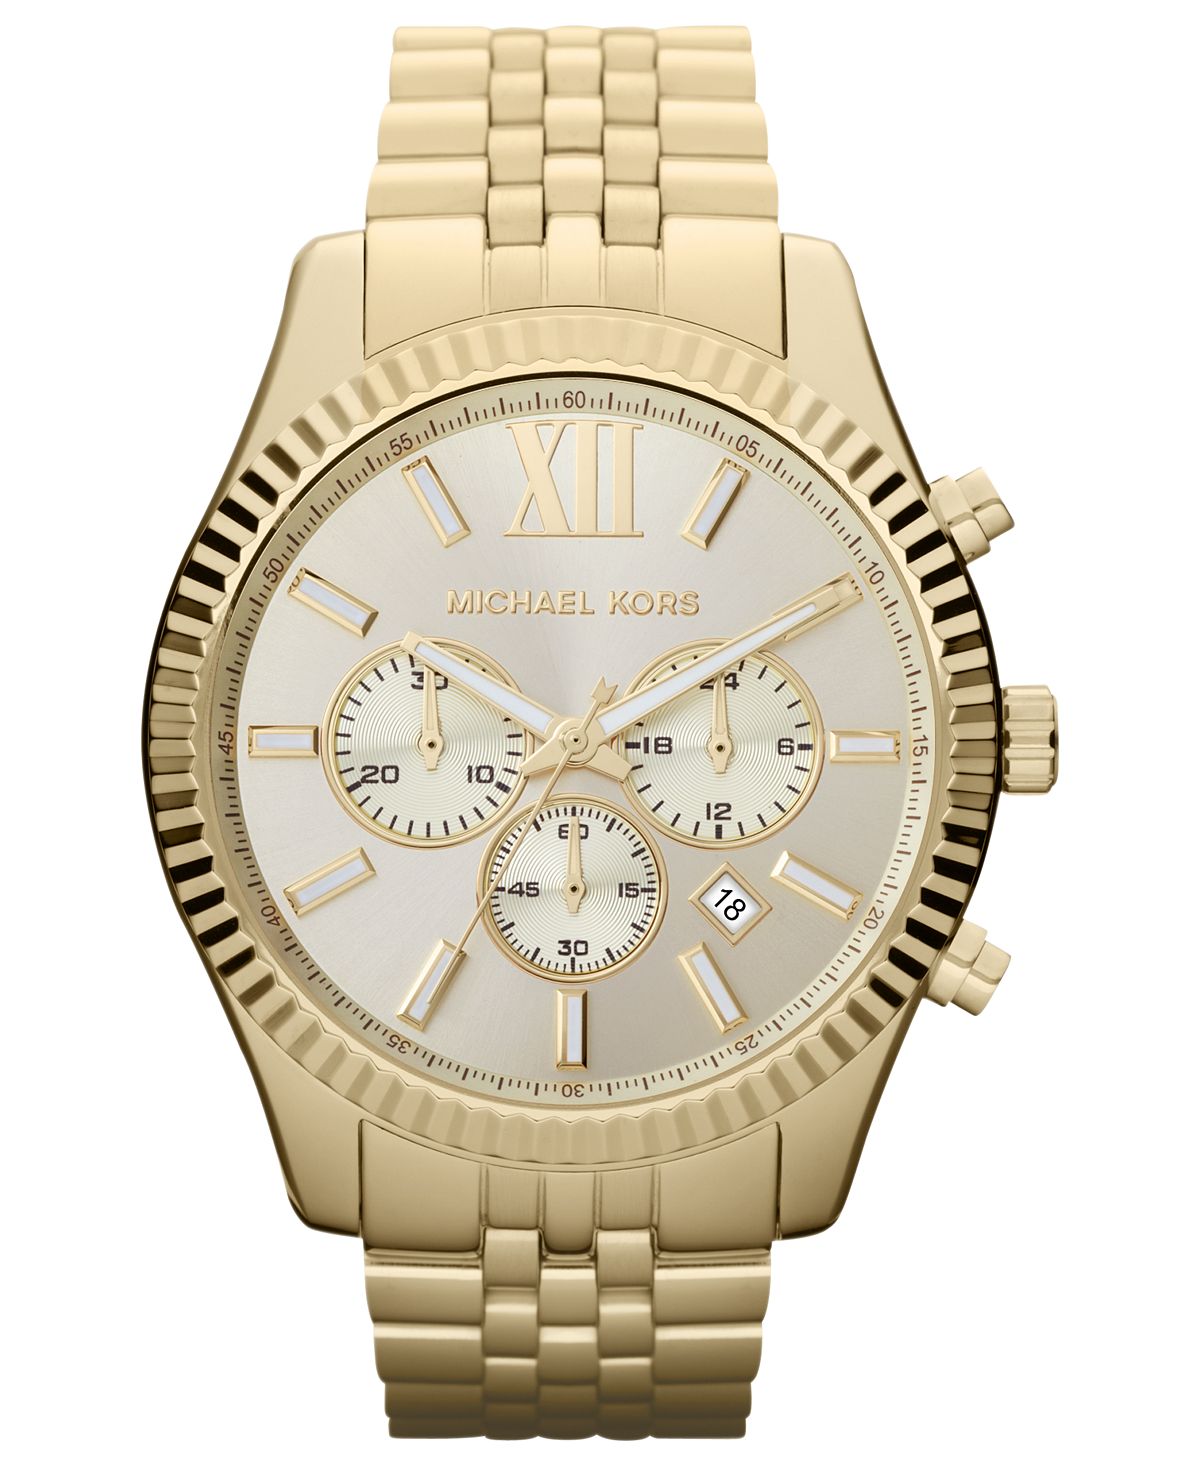 Мужские часы-хронограф Lexington с золотистым браслетом из нержавеющей стали, 45 мм, MK8281 Michael Kors